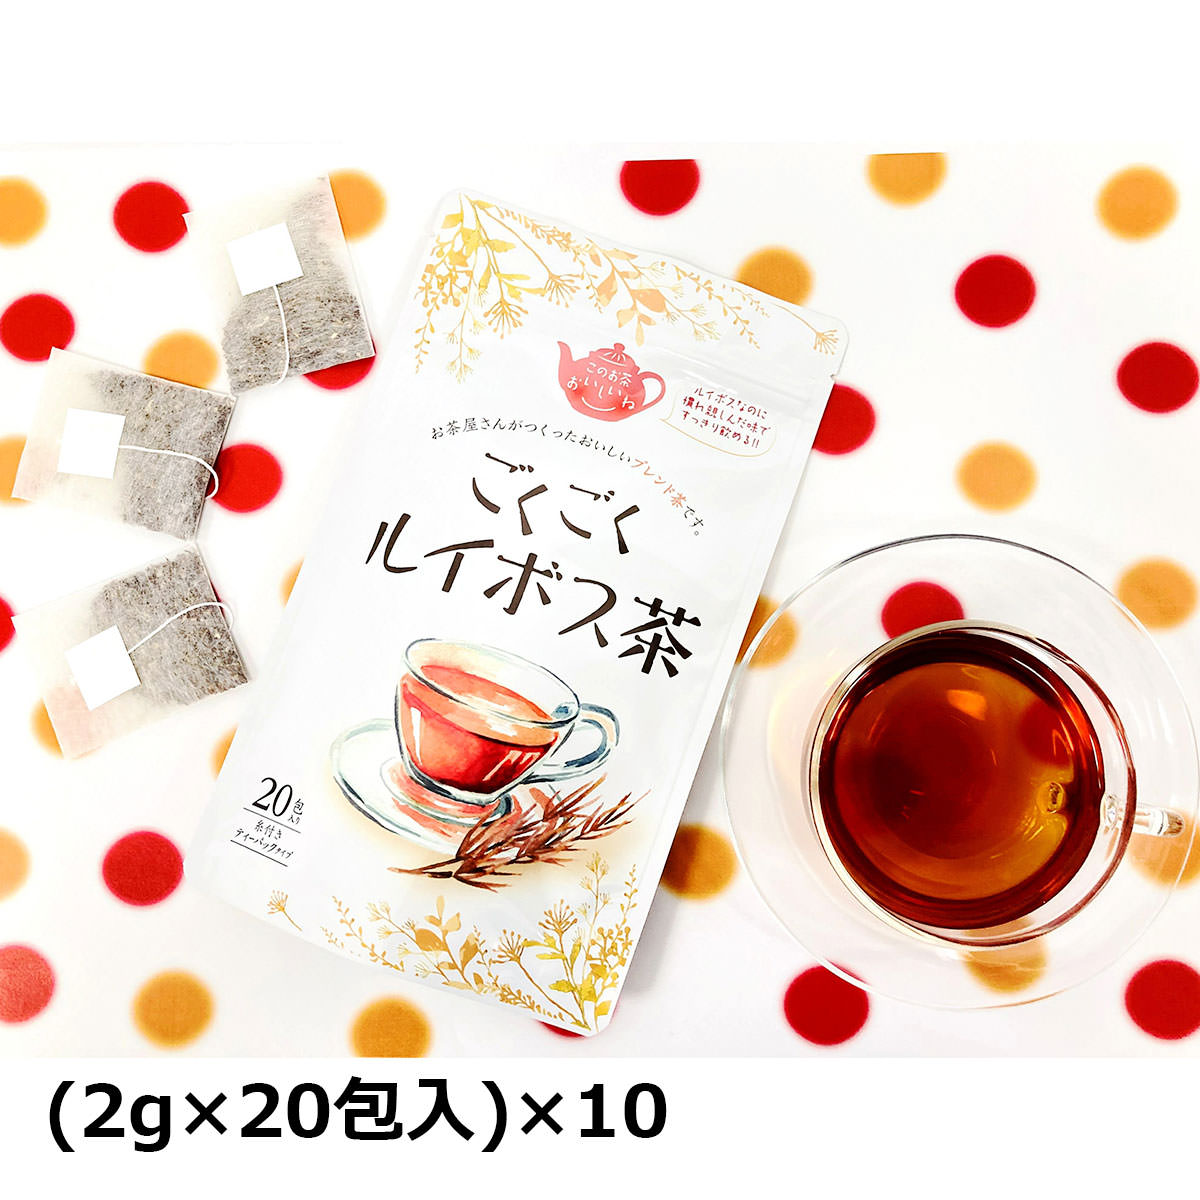 【10%割引】ごくごくルイボス茶 20包入10袋 ブレンド茶 ティーバッグ ルイボスティー ハーブティー ルイボス茶 ティーパック 便利 手軽 飲みやすい 健康茶